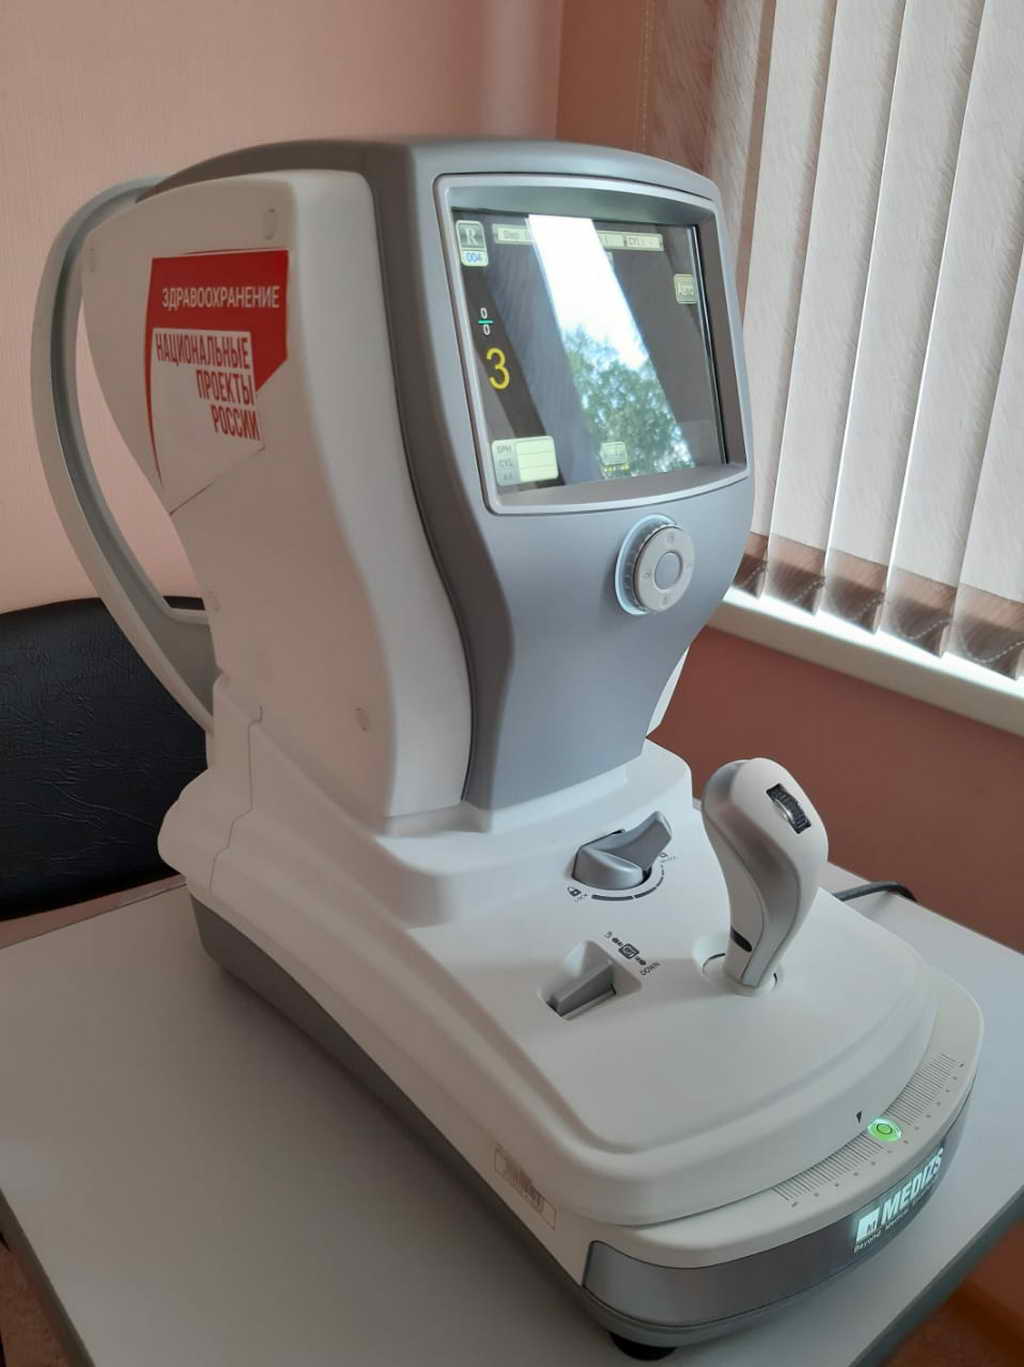 Парк медицинской техники Кузбасской областной детской клинической больницы пополнился новым медицинским оборудованием по нацпроекту «Здравоохранение»